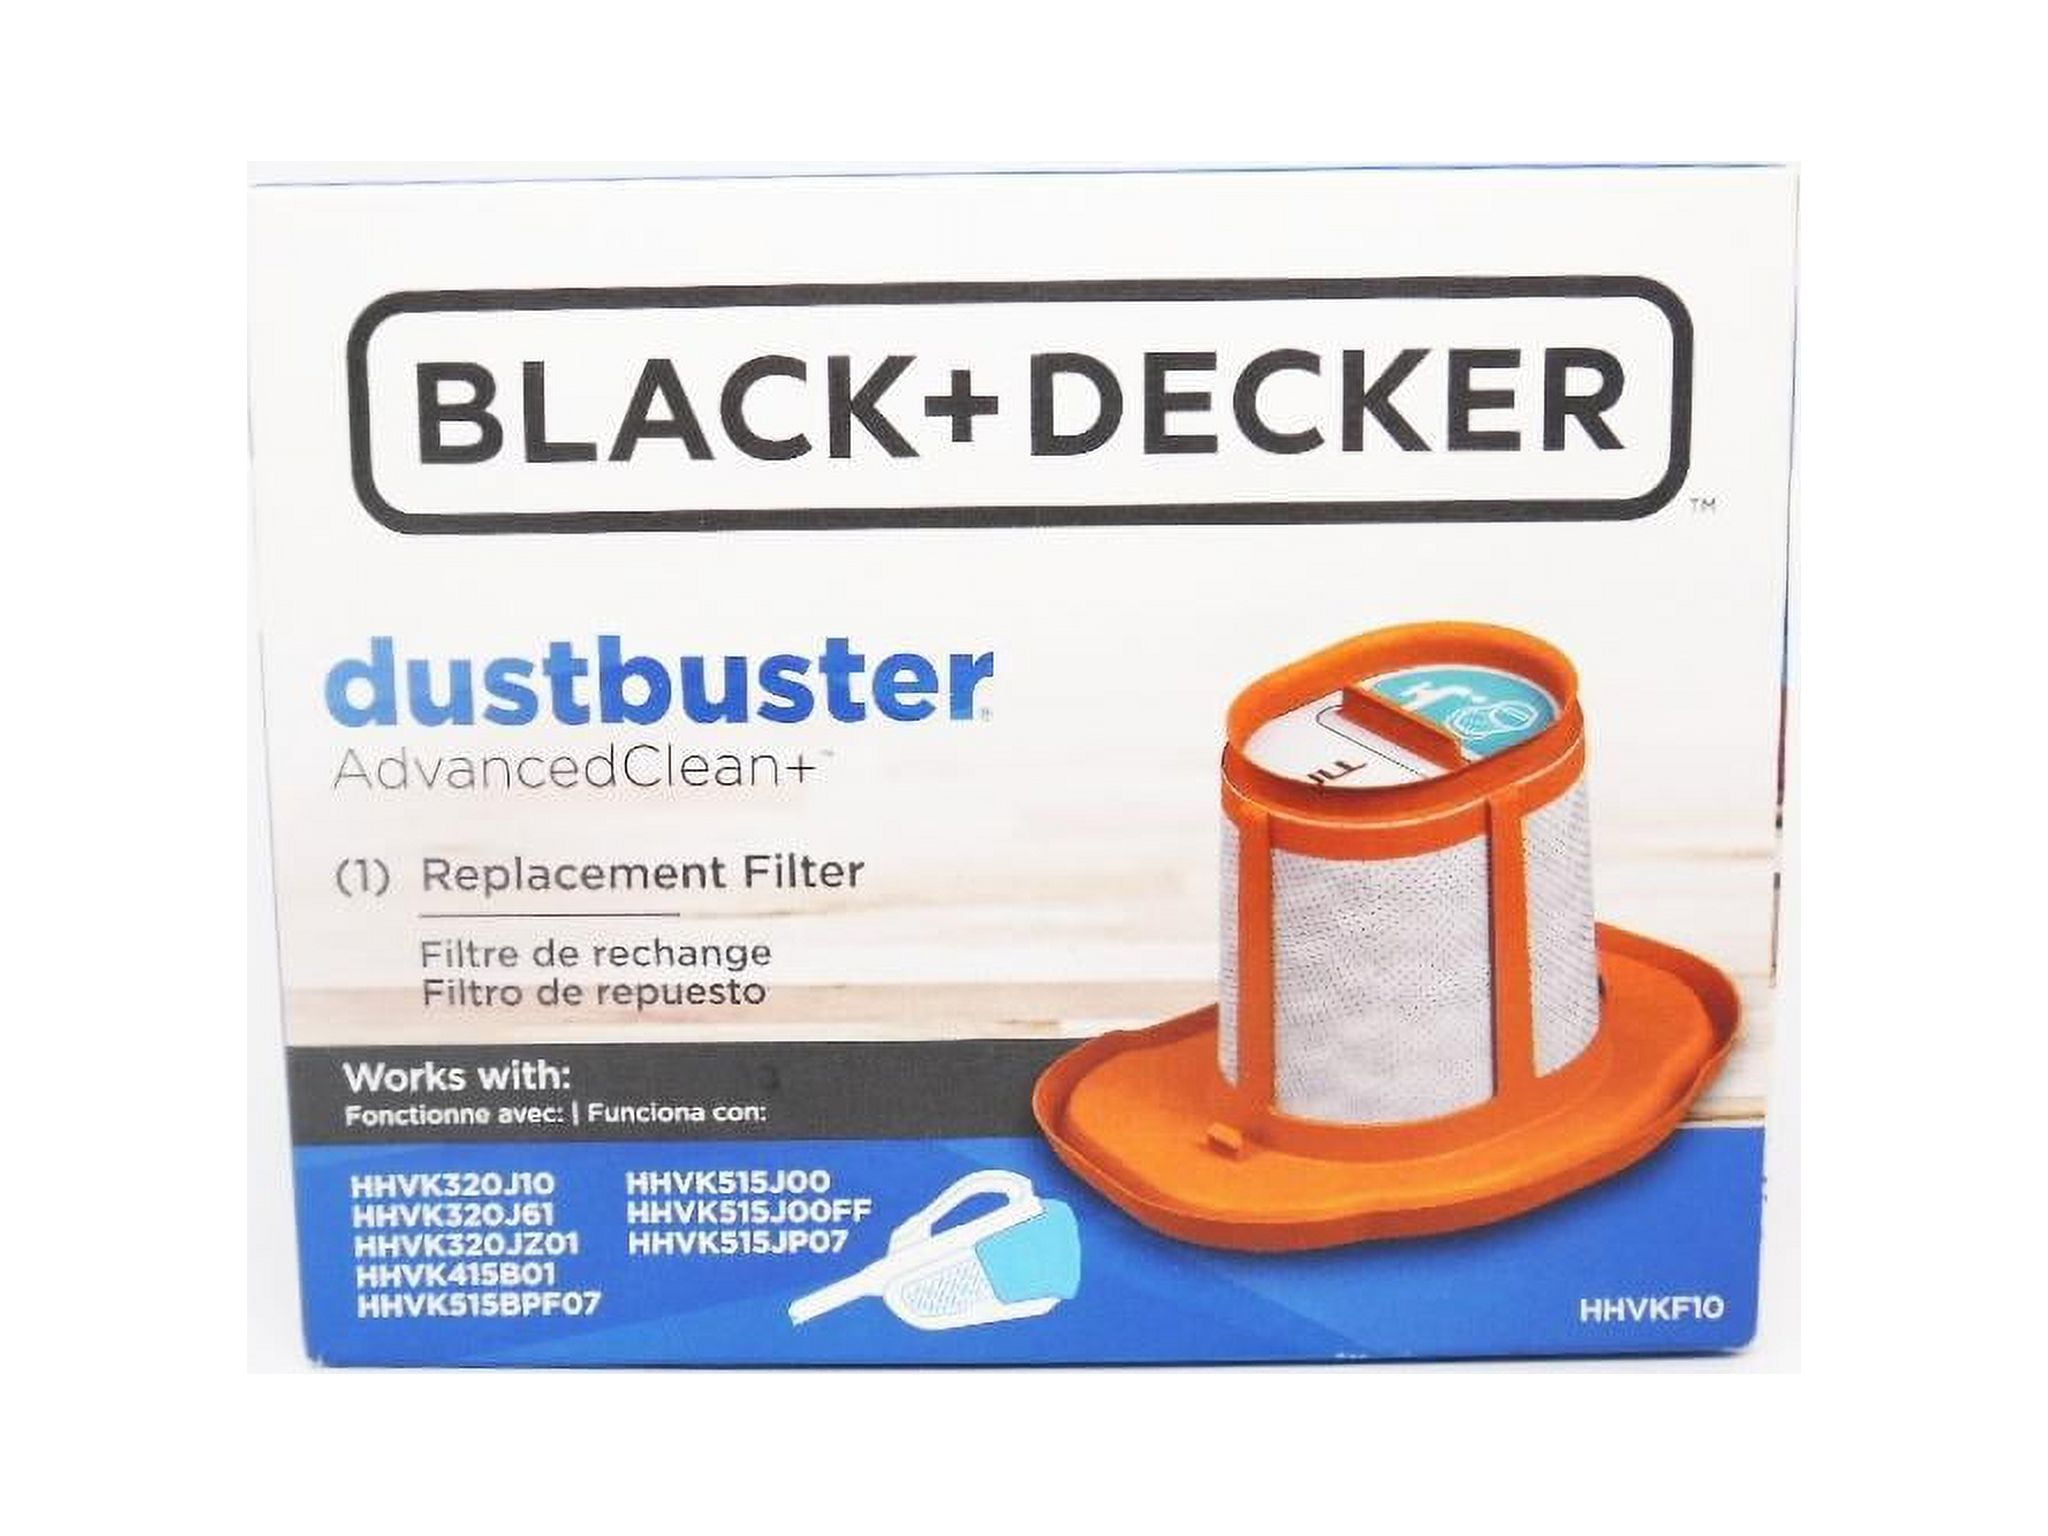 Black & Decker HHVKF10 Replacement Dustbuster Hand Vacuum Filter